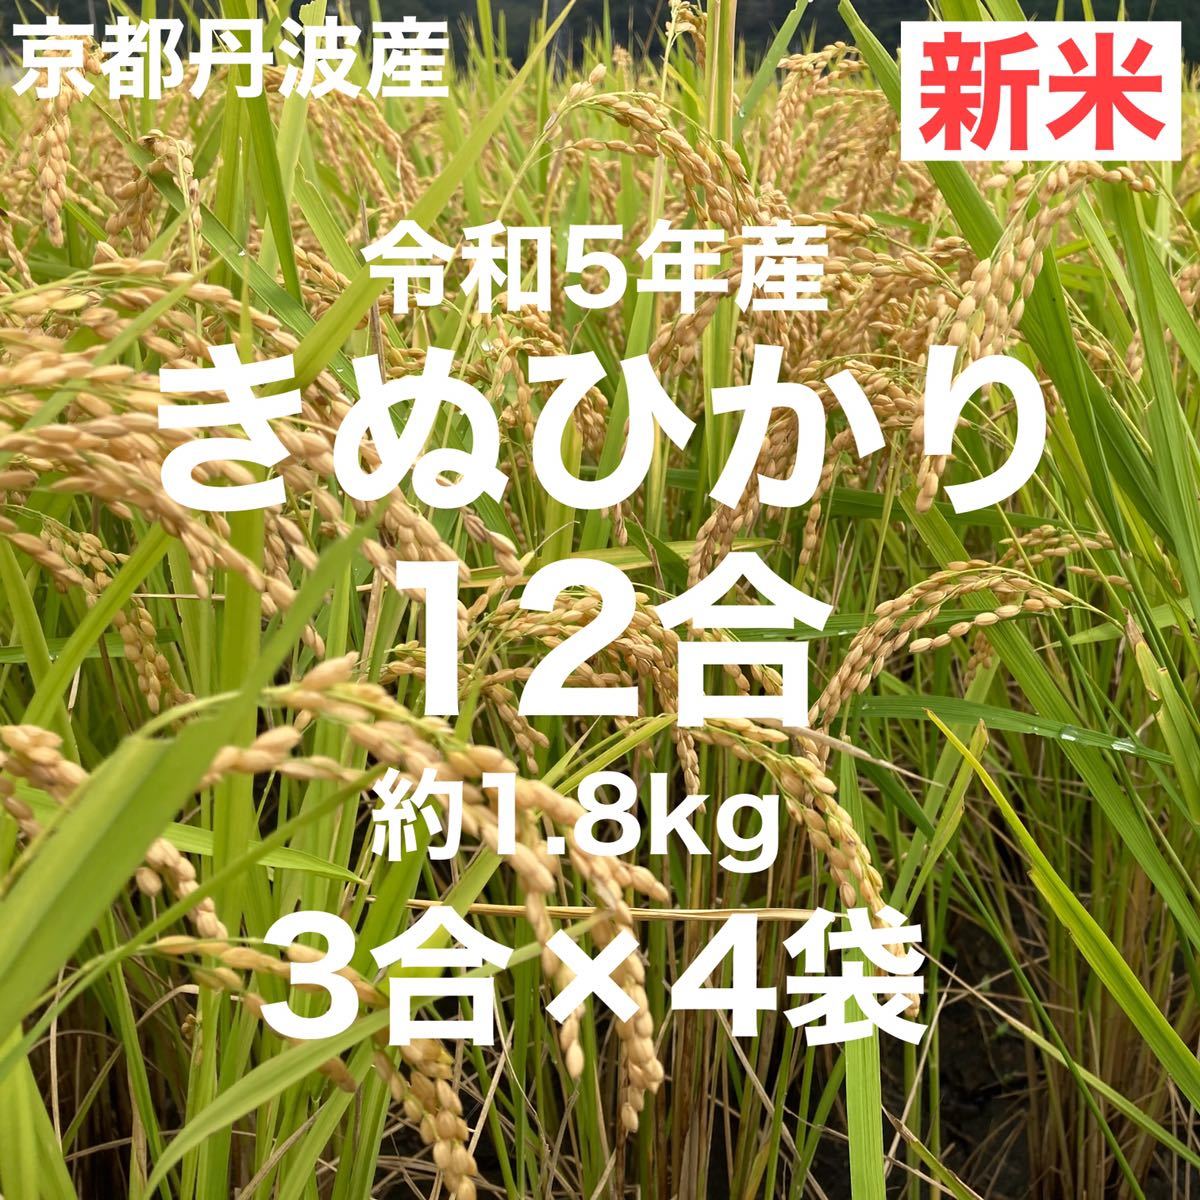 新米 12合(3合×4袋) 1.8Kg 京都丹波産キヌヒカリ 令和5年産 農家直送_画像1